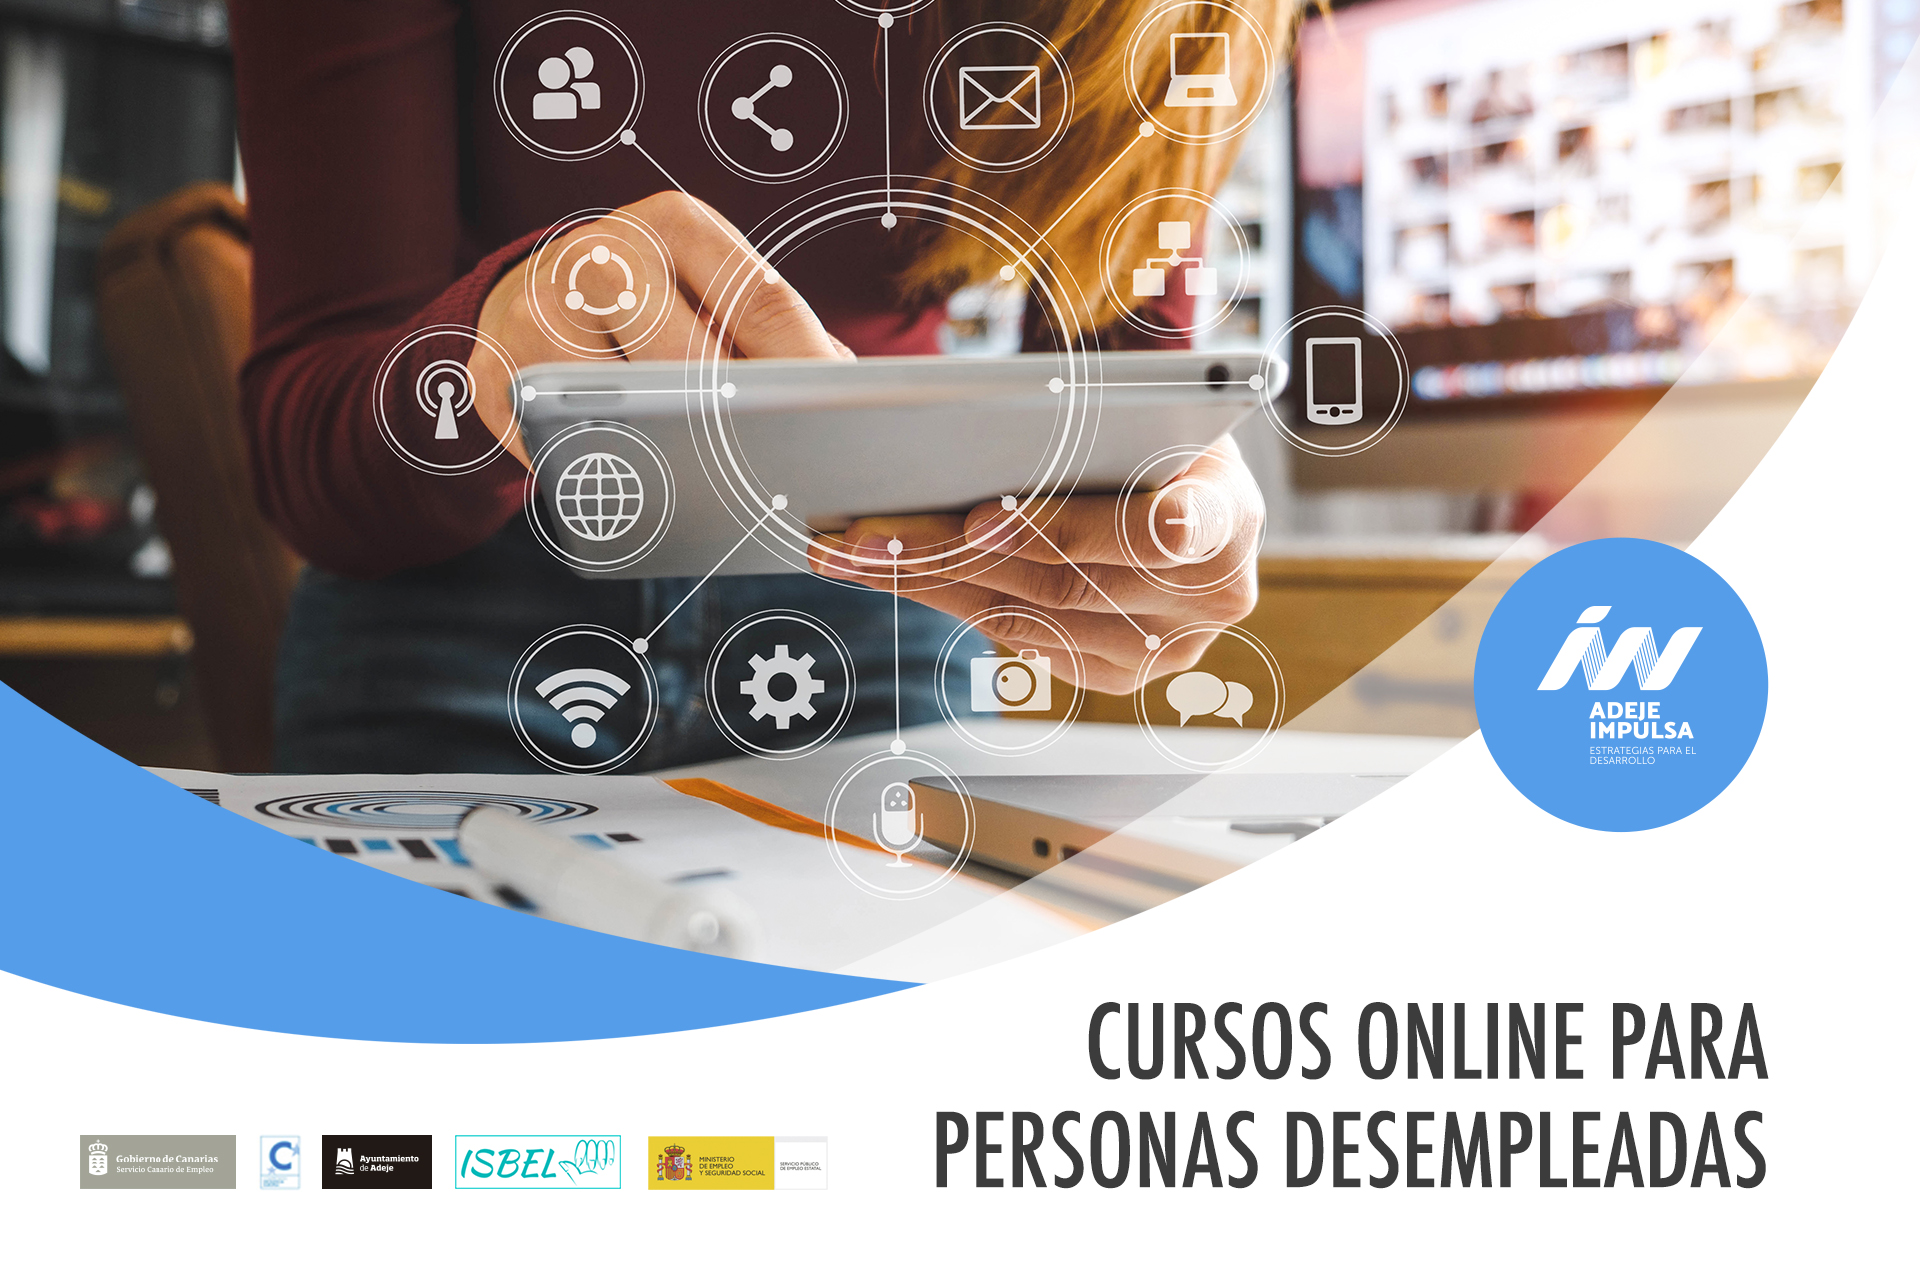 Cursos de formación Online Adeje. Tenerife